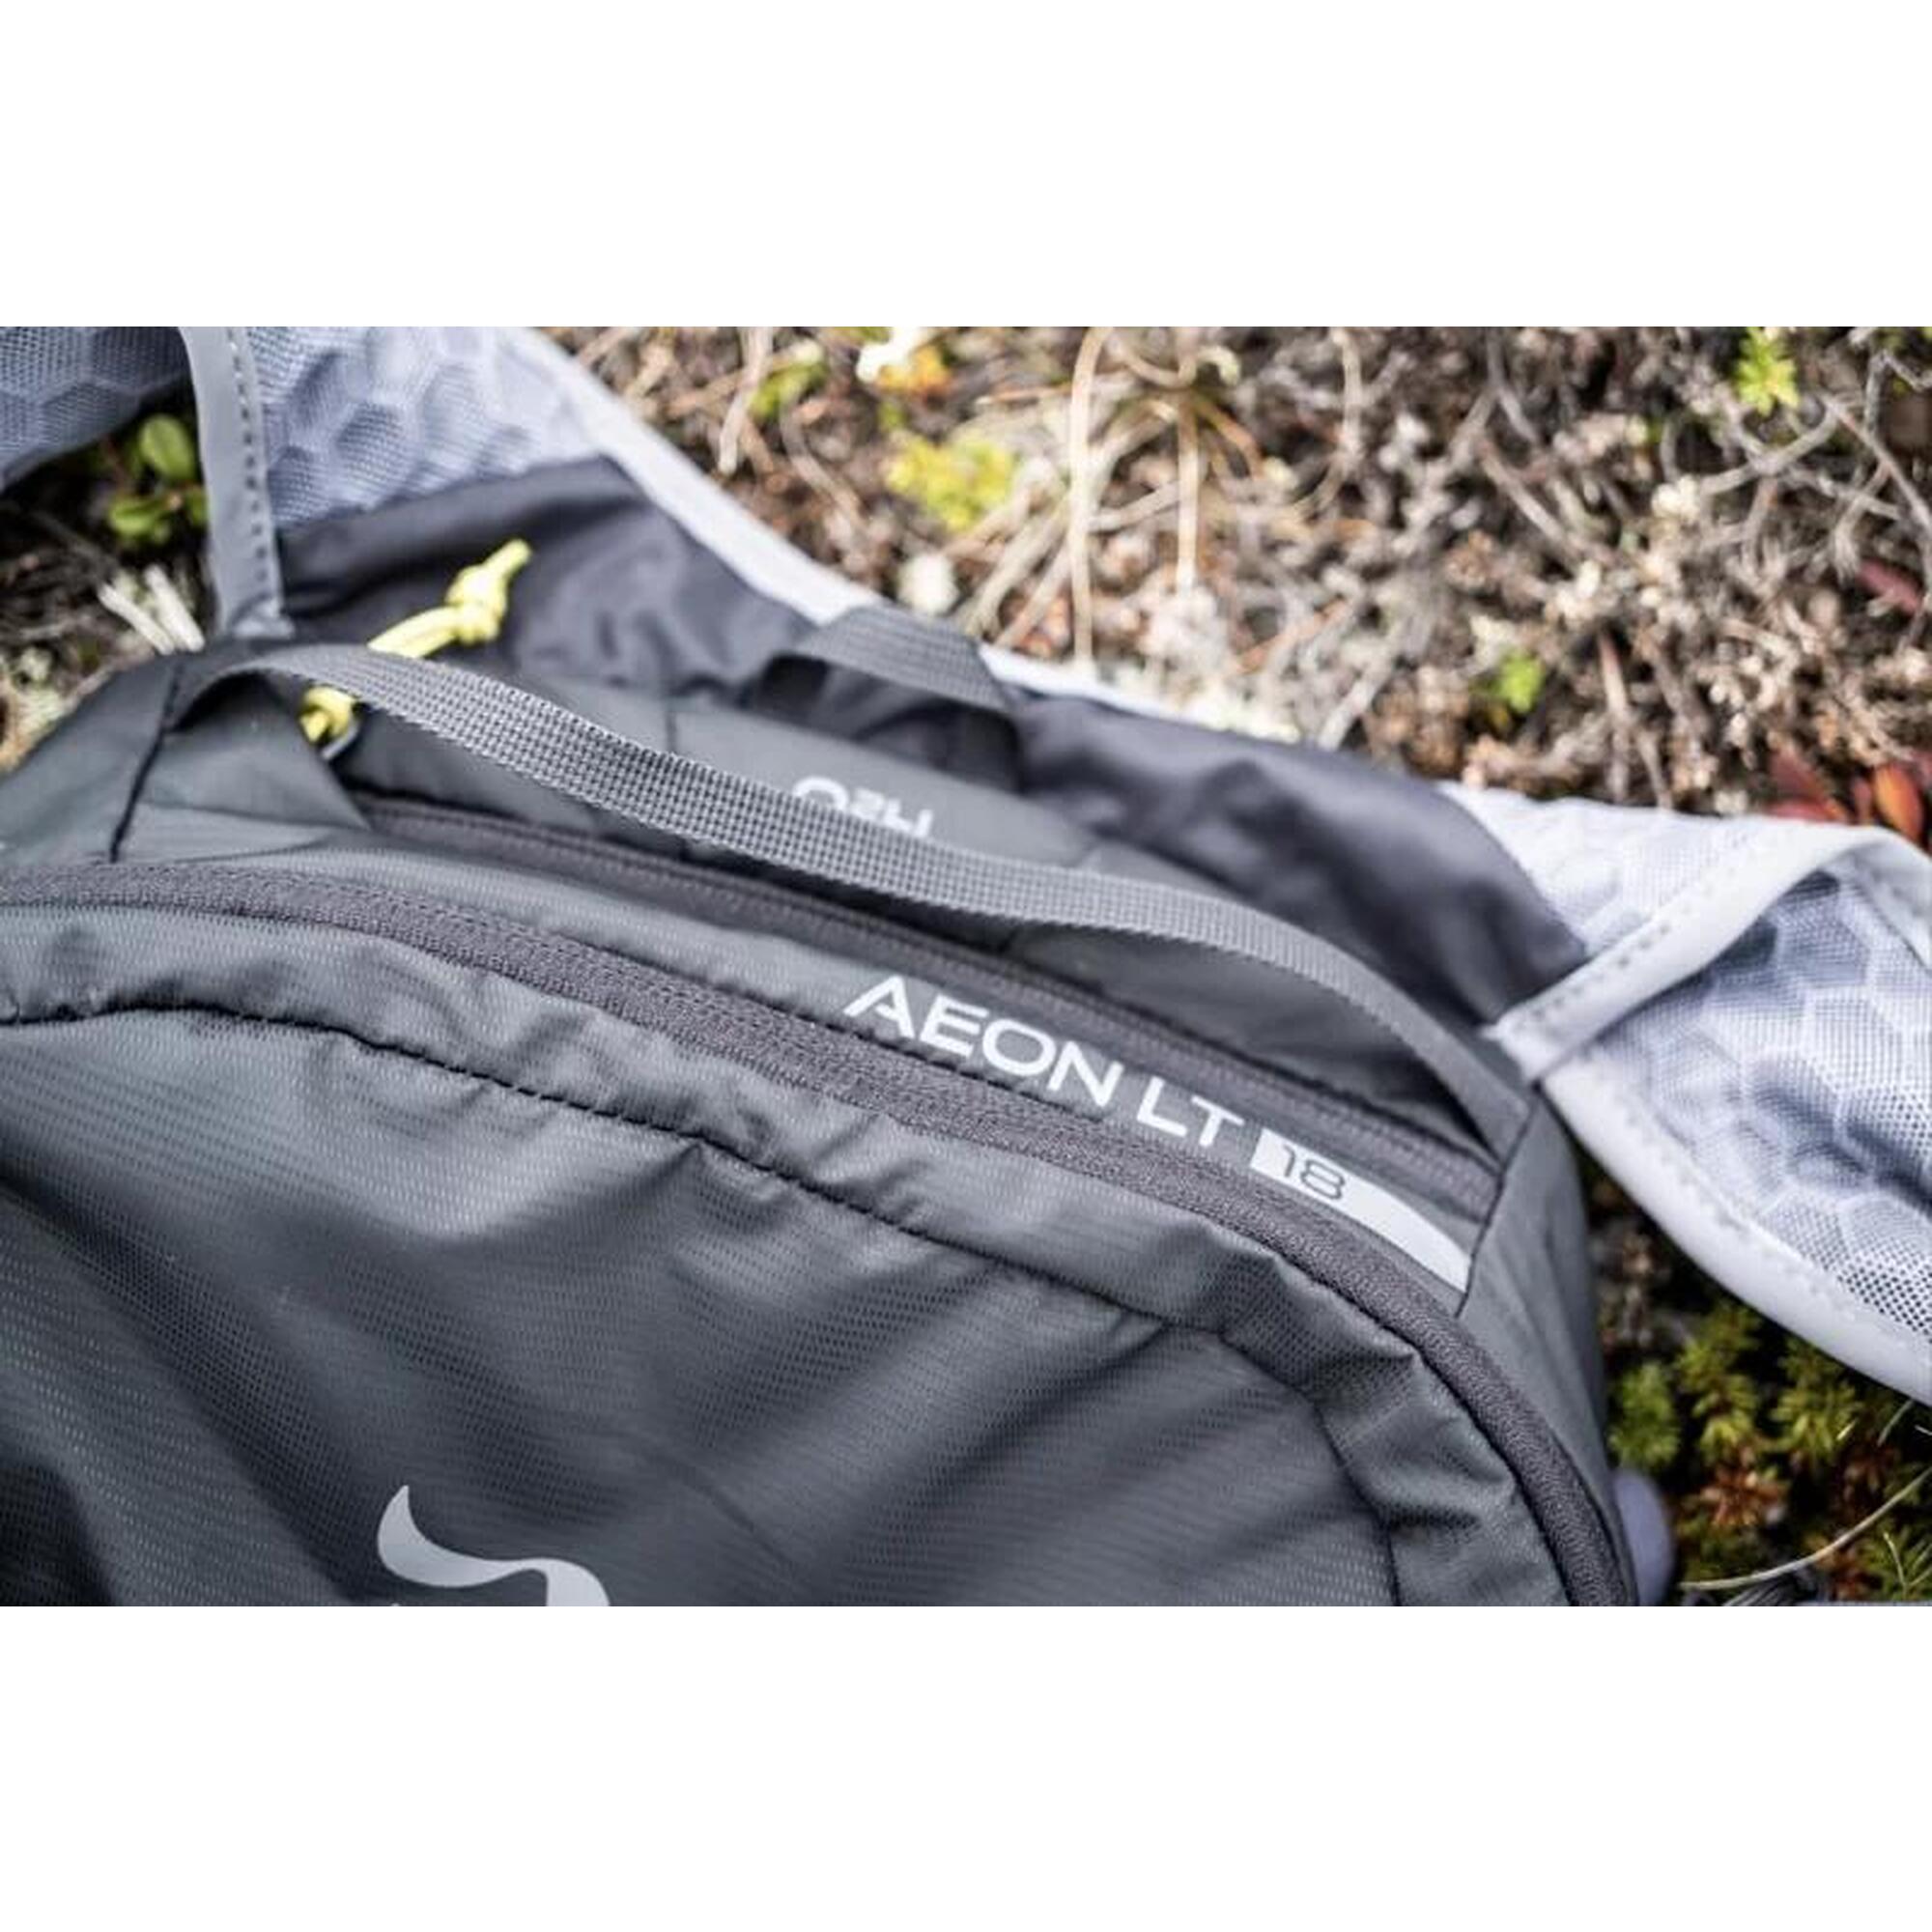 Aeon LT Hiking Backpack 18L - Grey